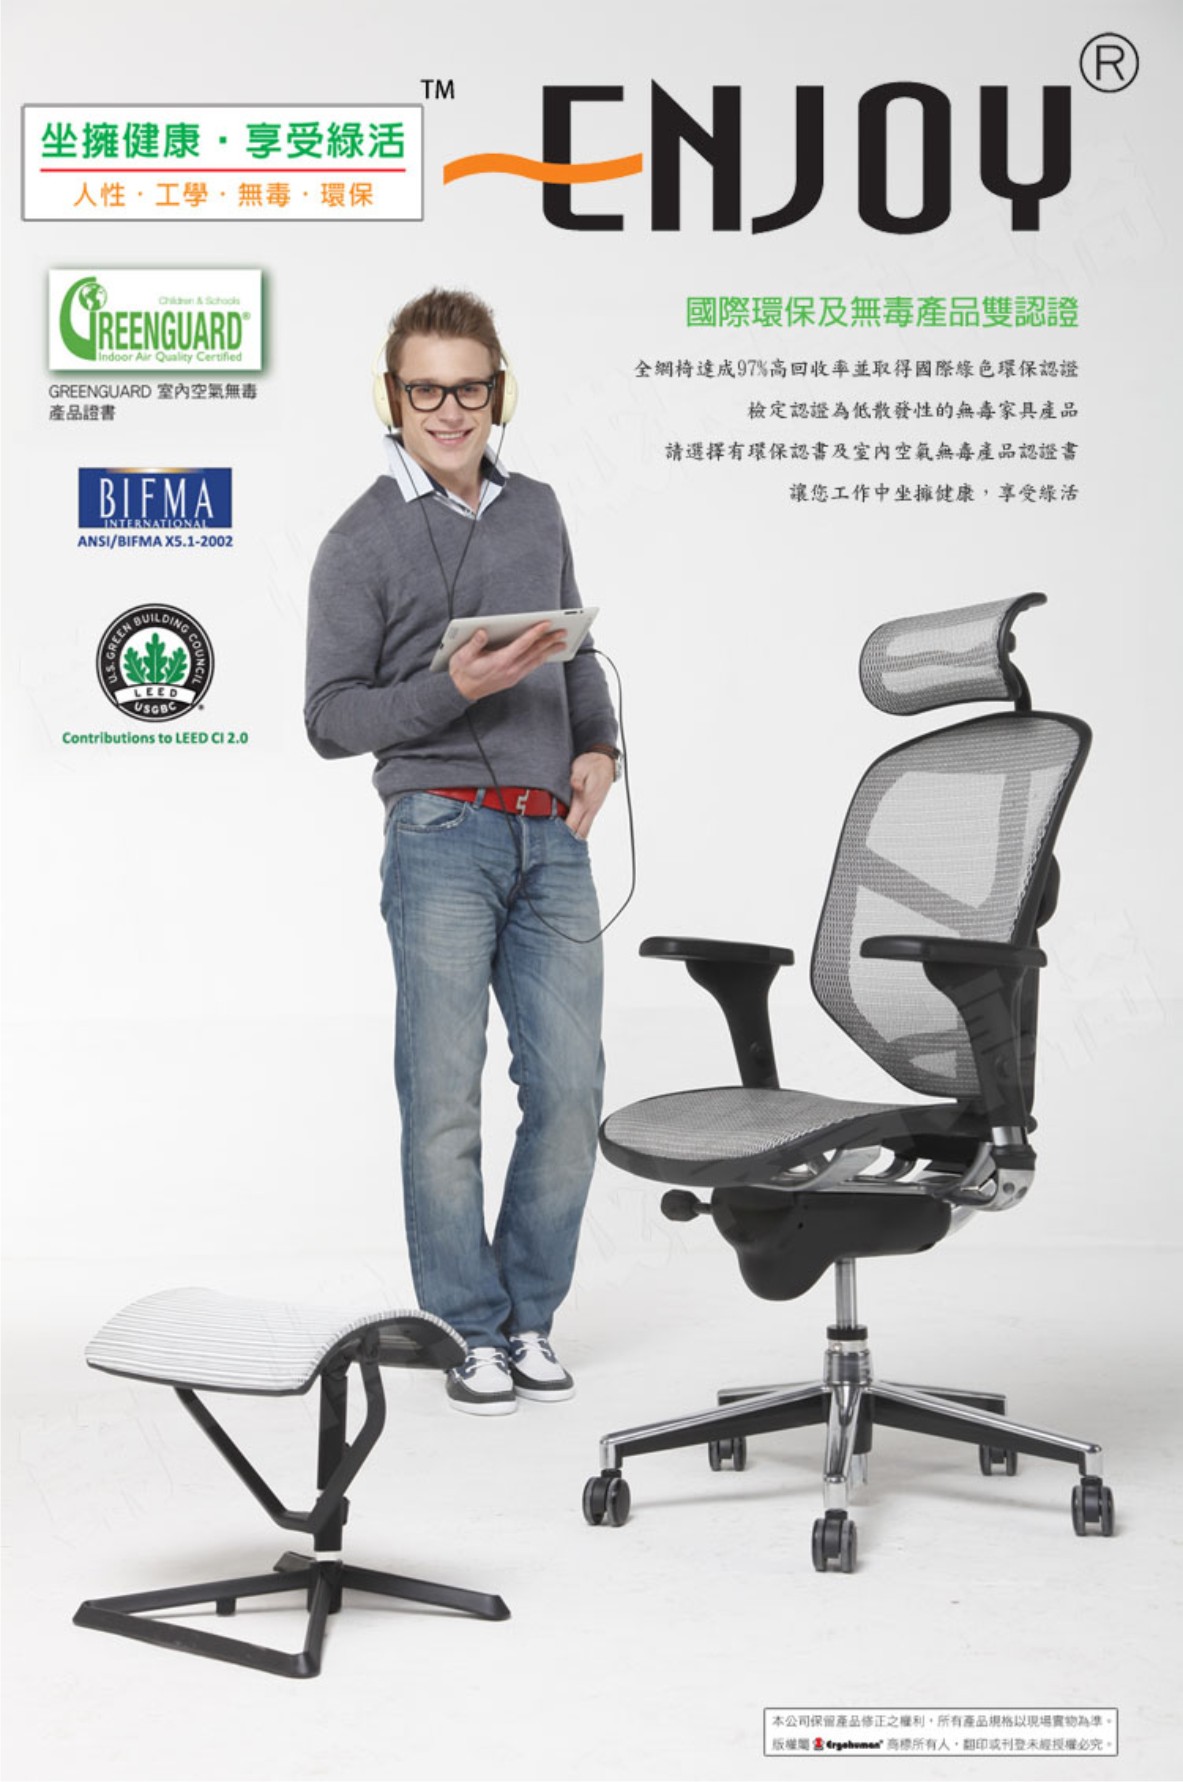 Enjoy 121人體工學椅|電腦網椅-線控豪華版國際環保及無毒產品雙認證